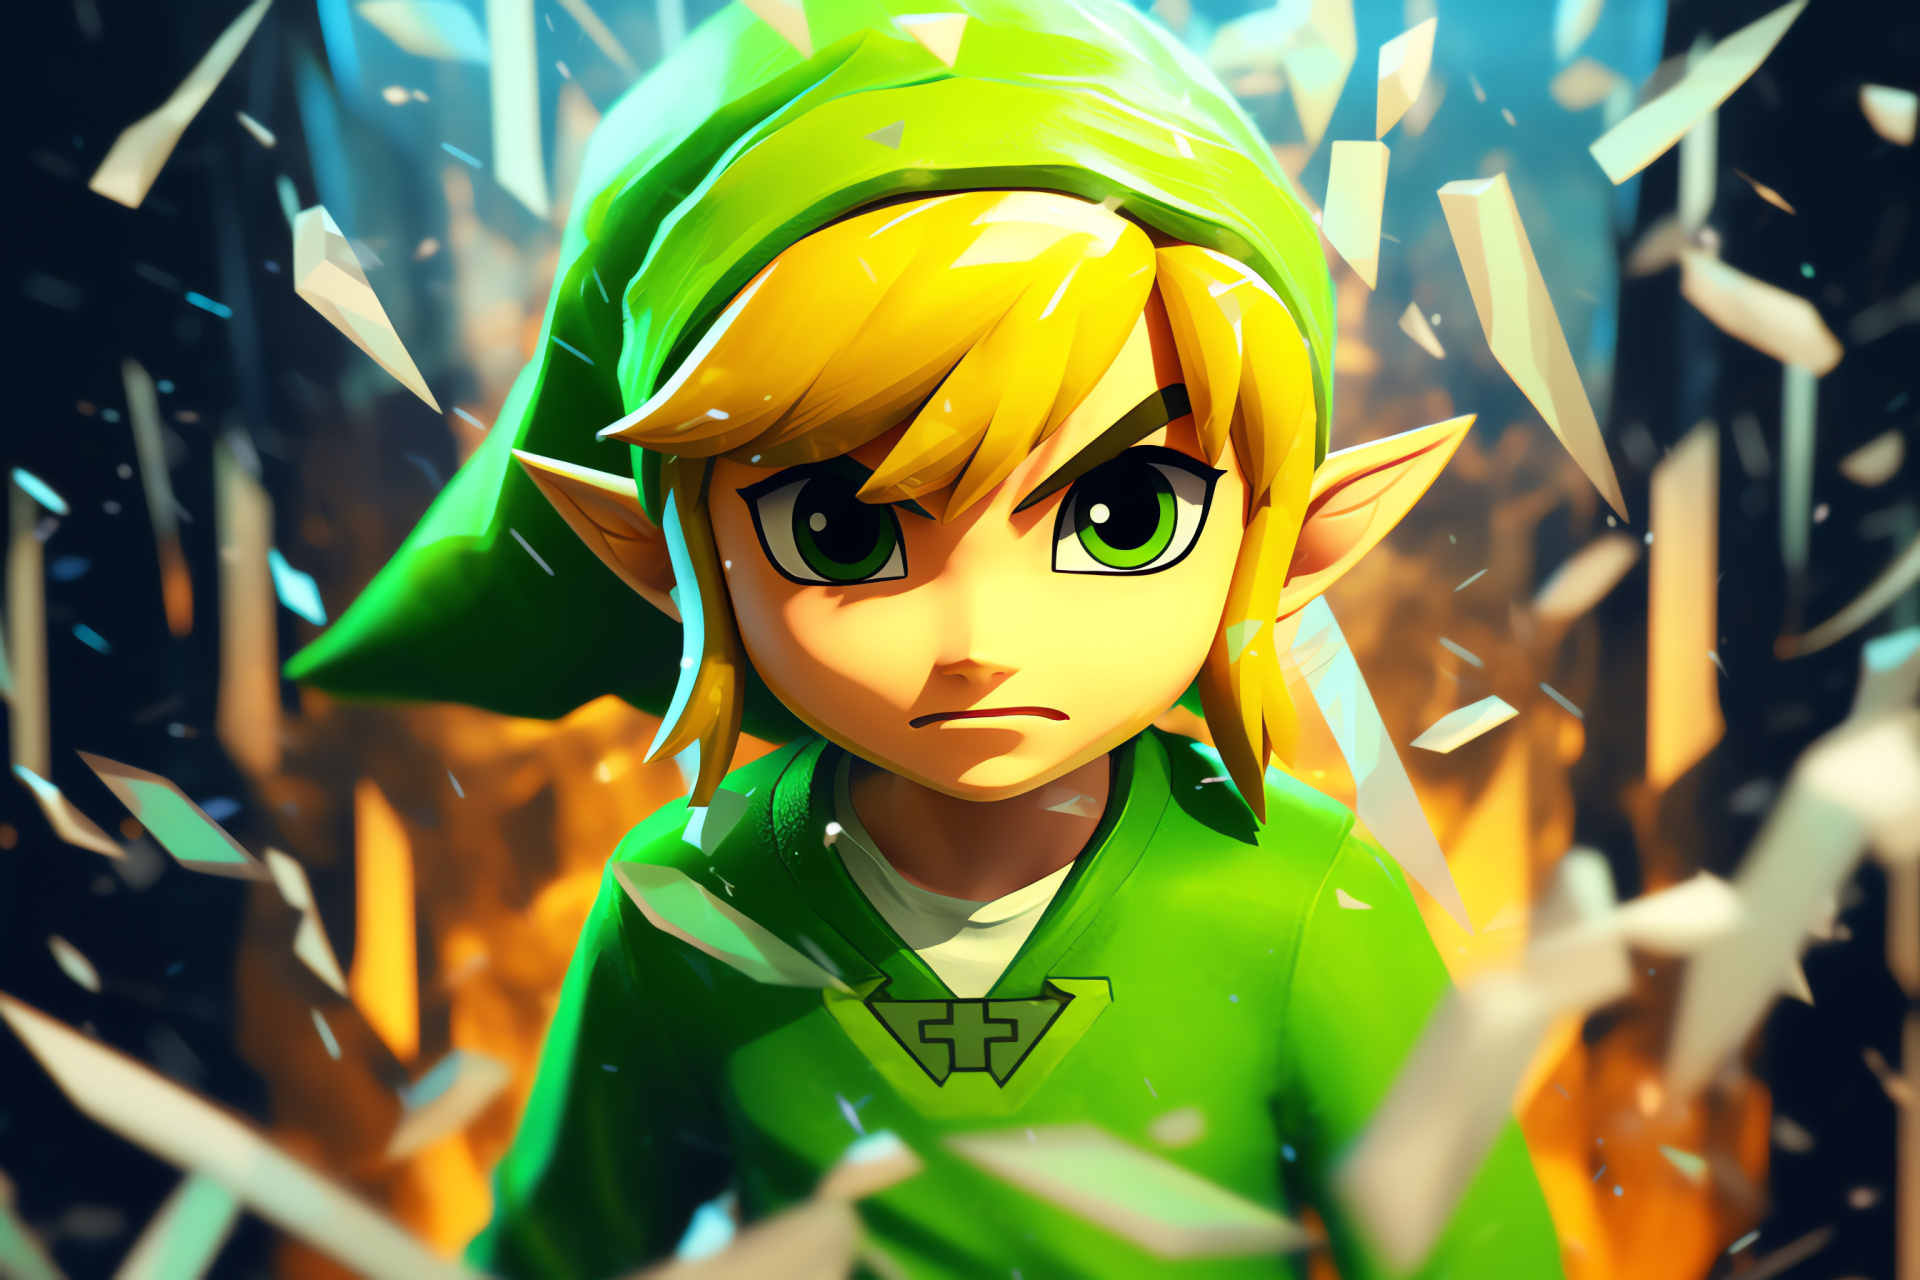 Toon Link's journey, Zelda series quest, Heroic figure, Nintendo gameplay, Fantasy action, HD Desktop Image